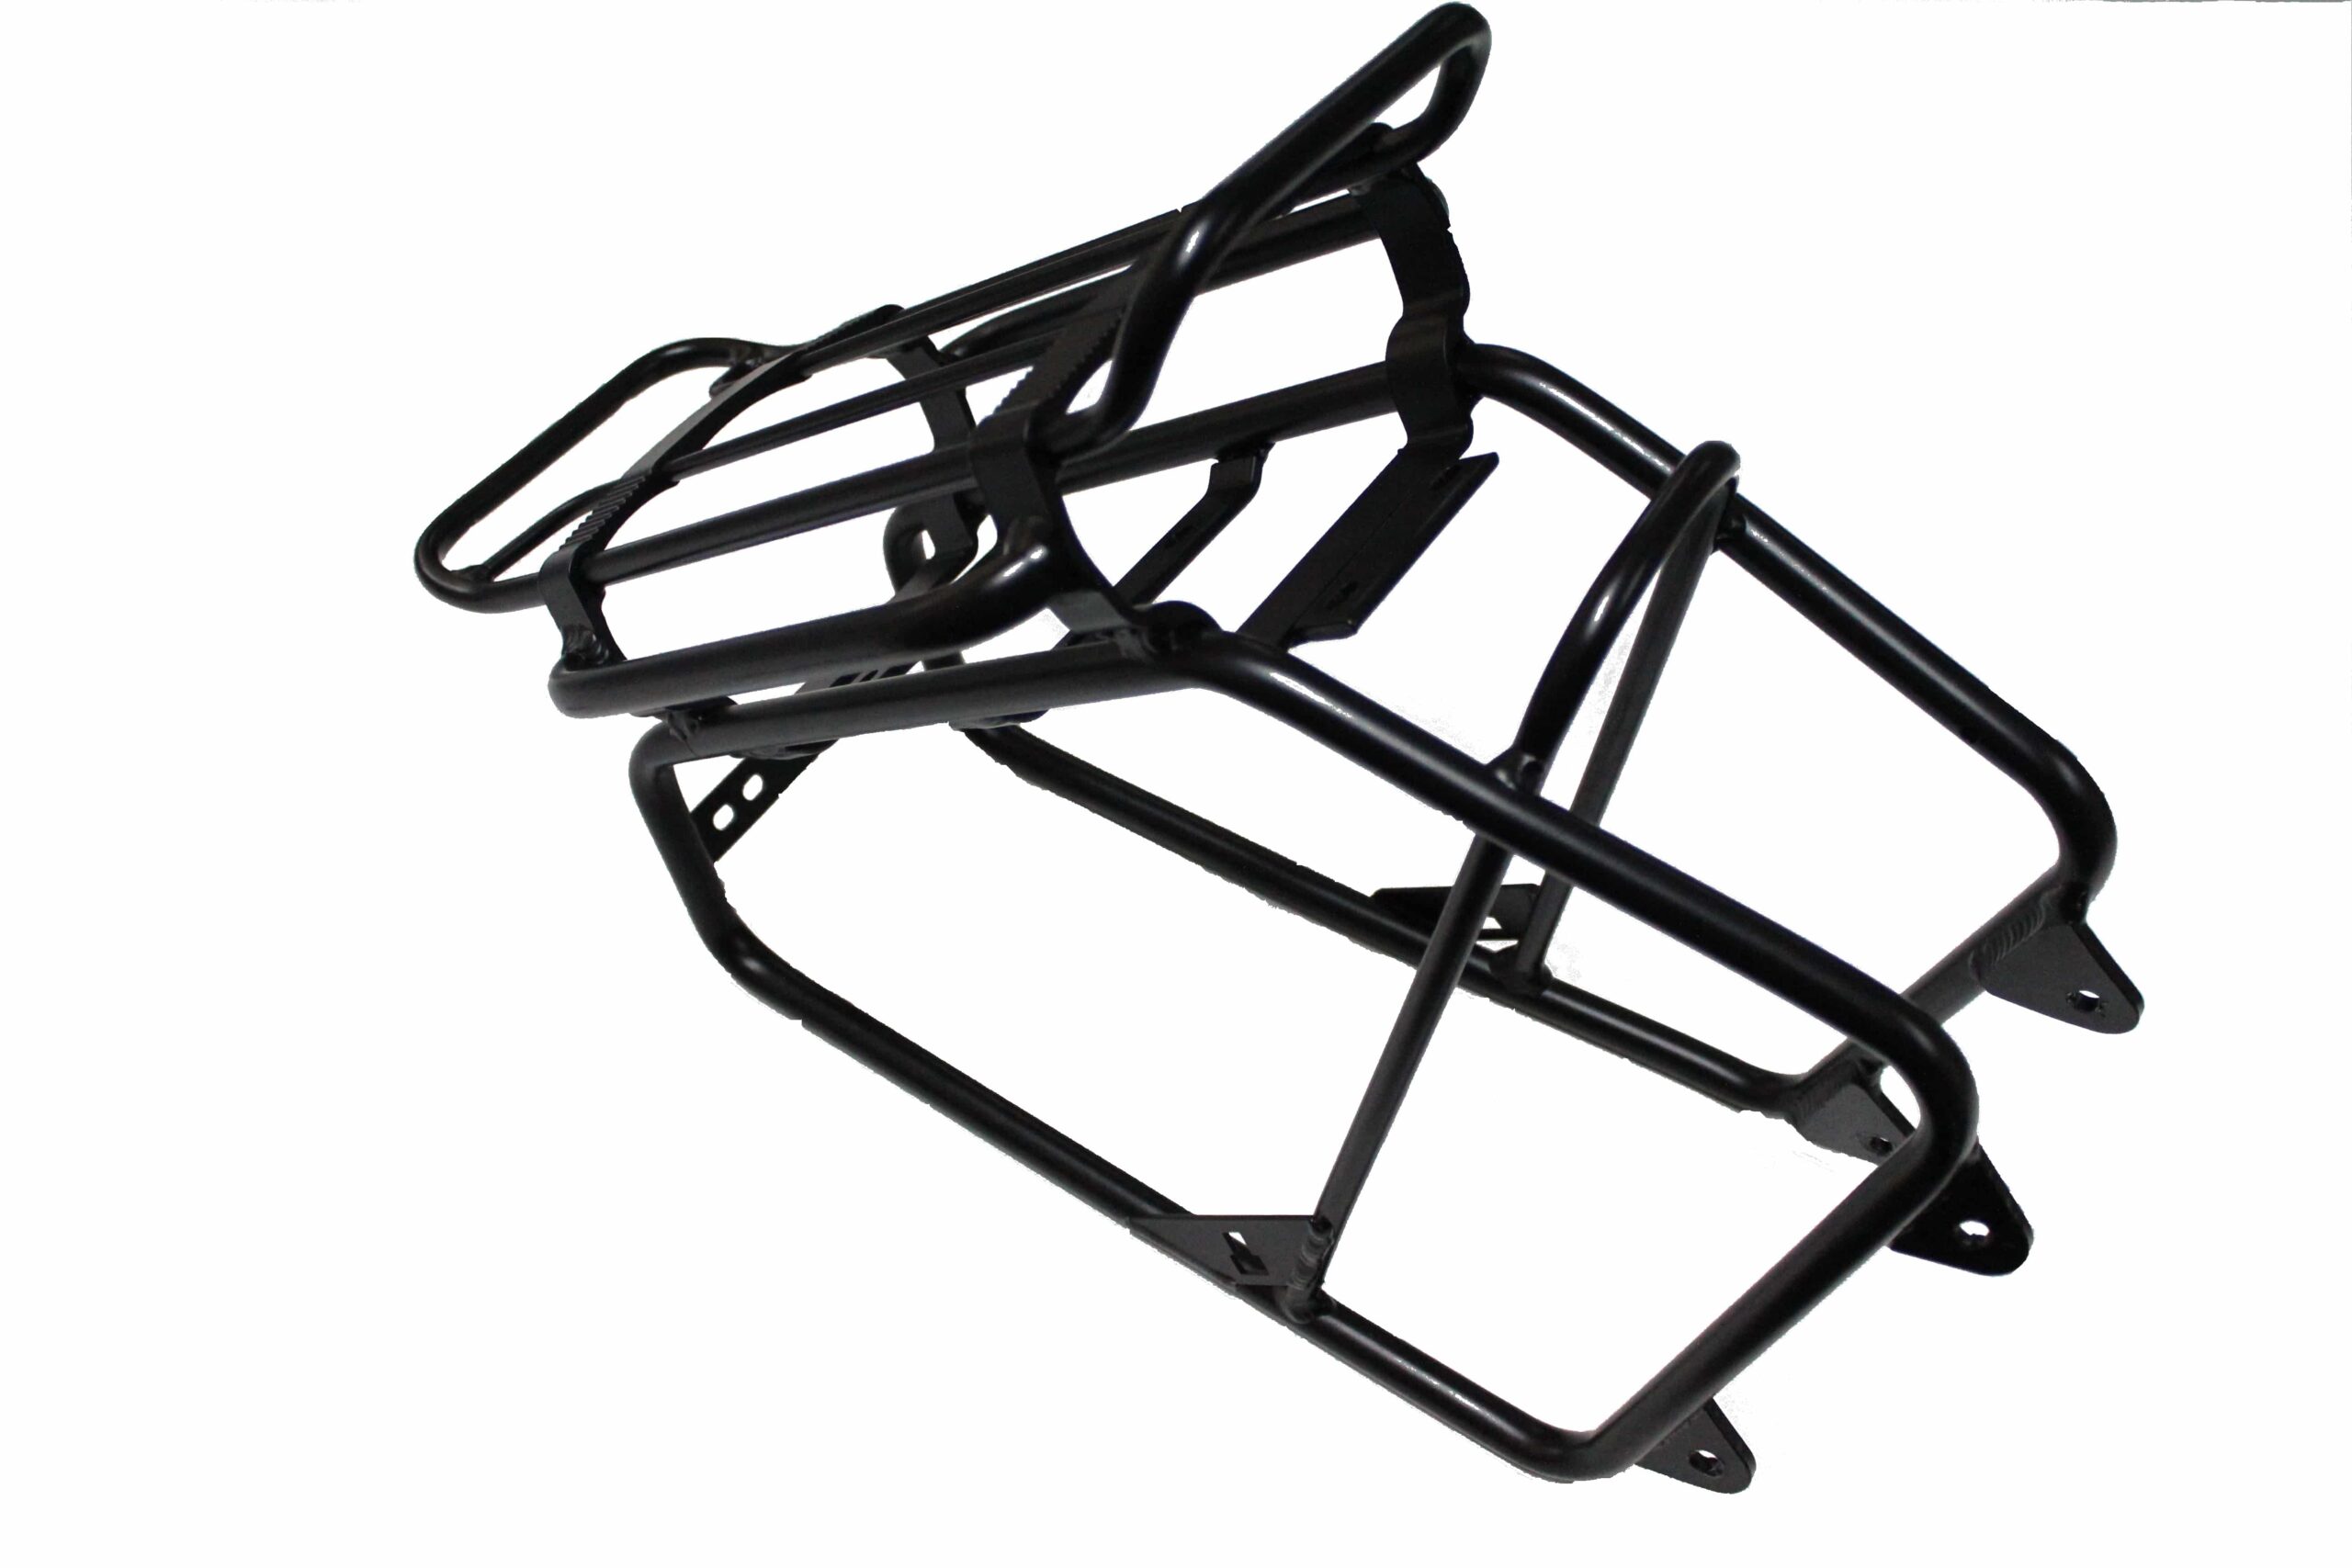 Rear Wisper Se Rack Black 2015 | Bike Accessories